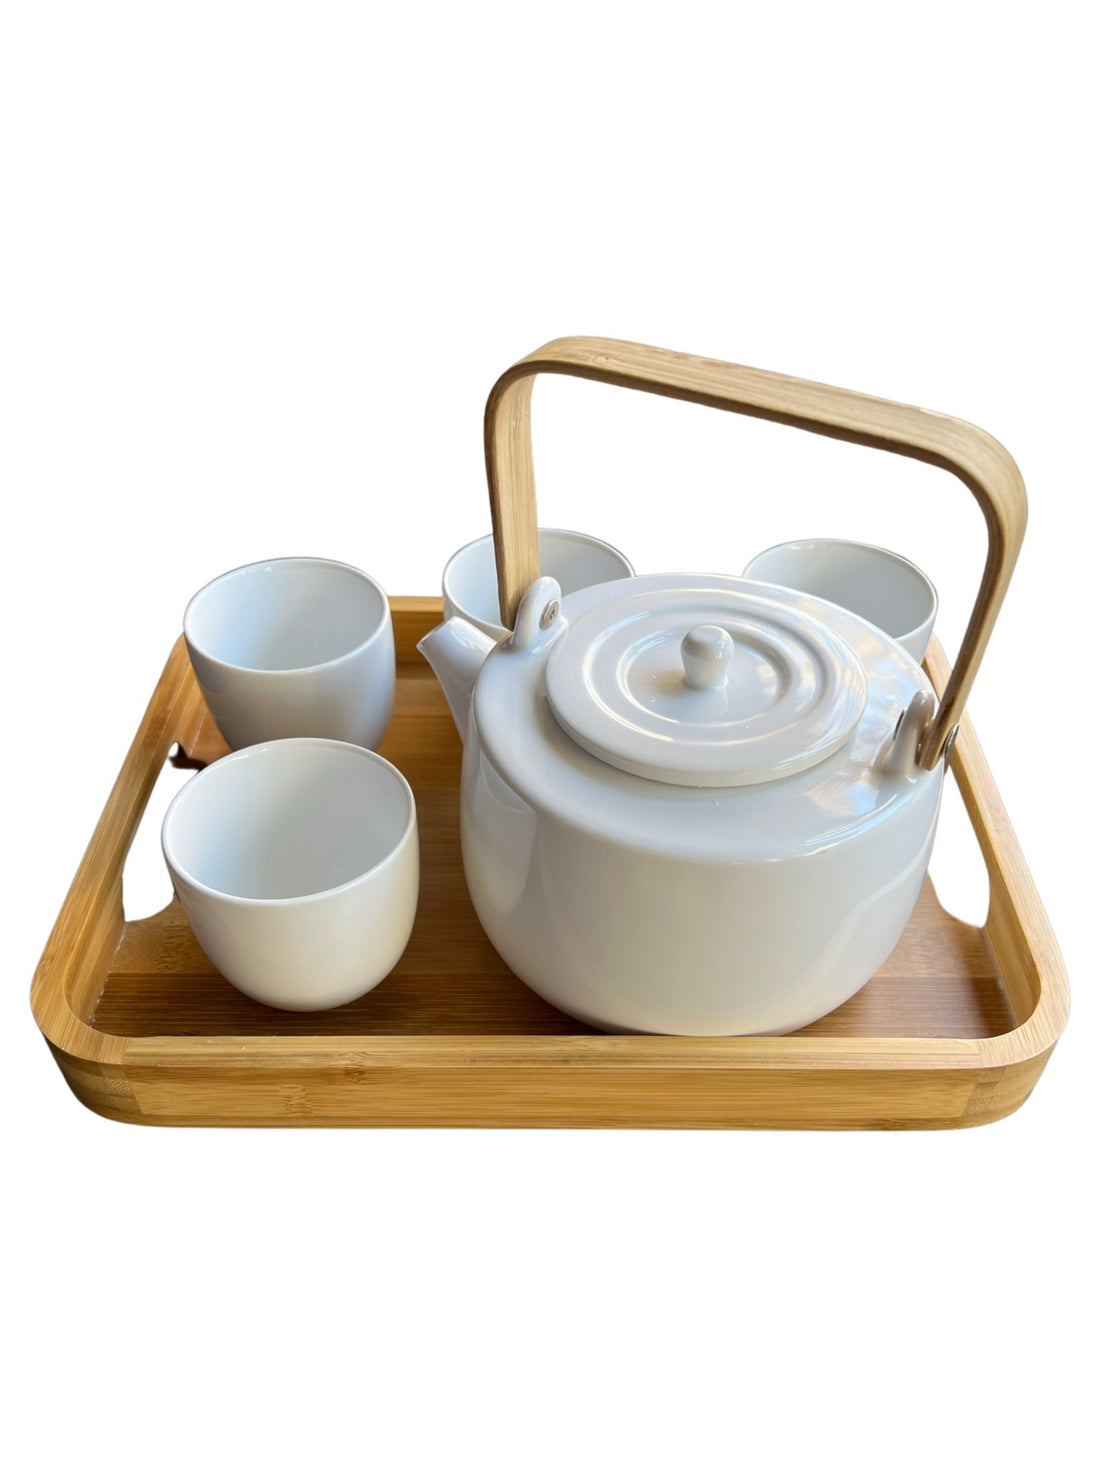 Casaware Serenity Tea Set - Loose Leaf Tea Market